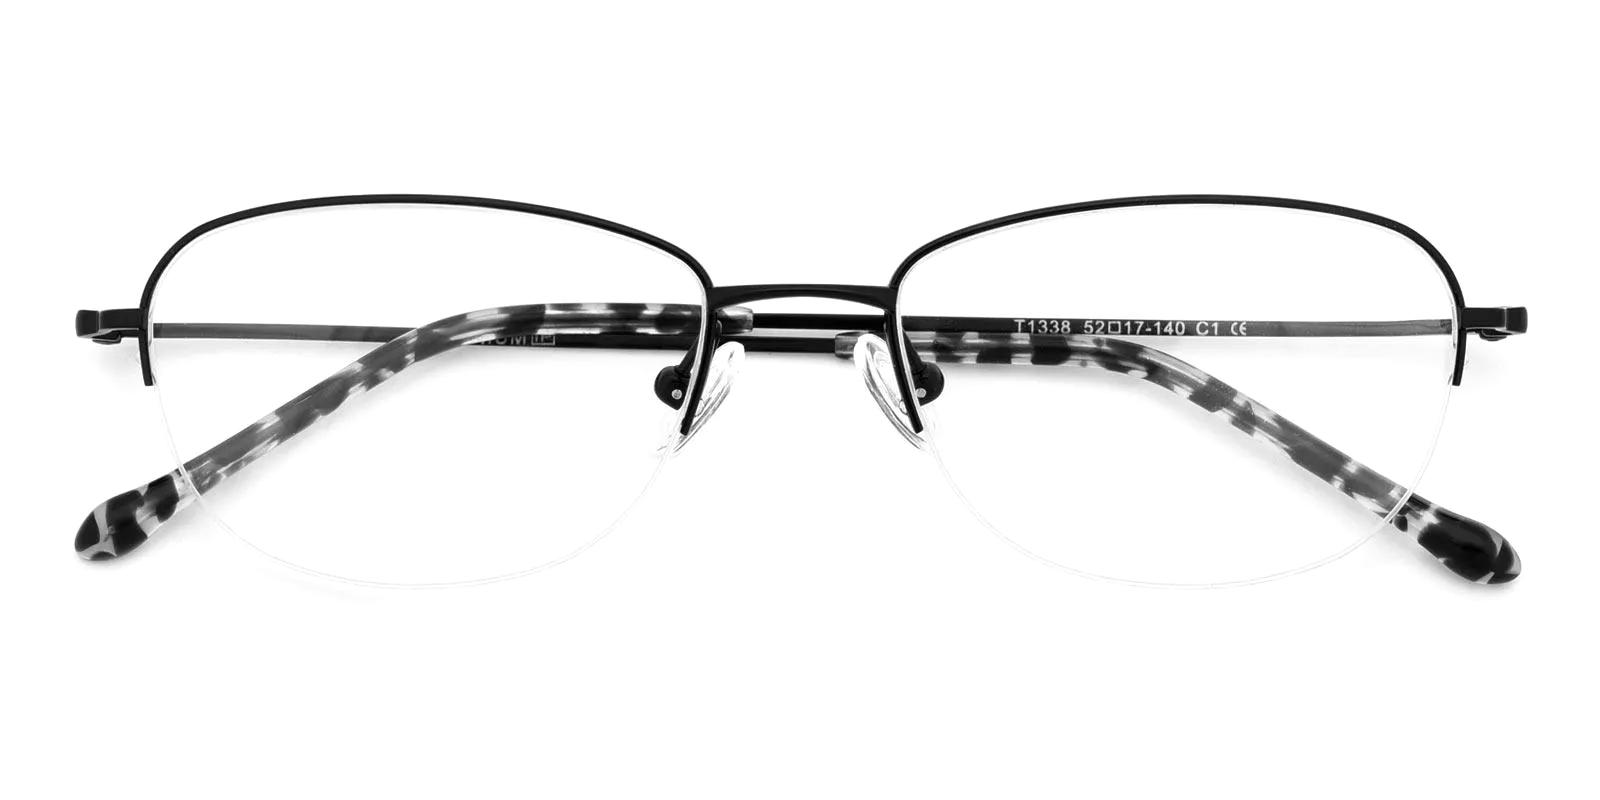 Legsive Black Titanium Eyeglasses , NosePads Frames from ABBE Glasses